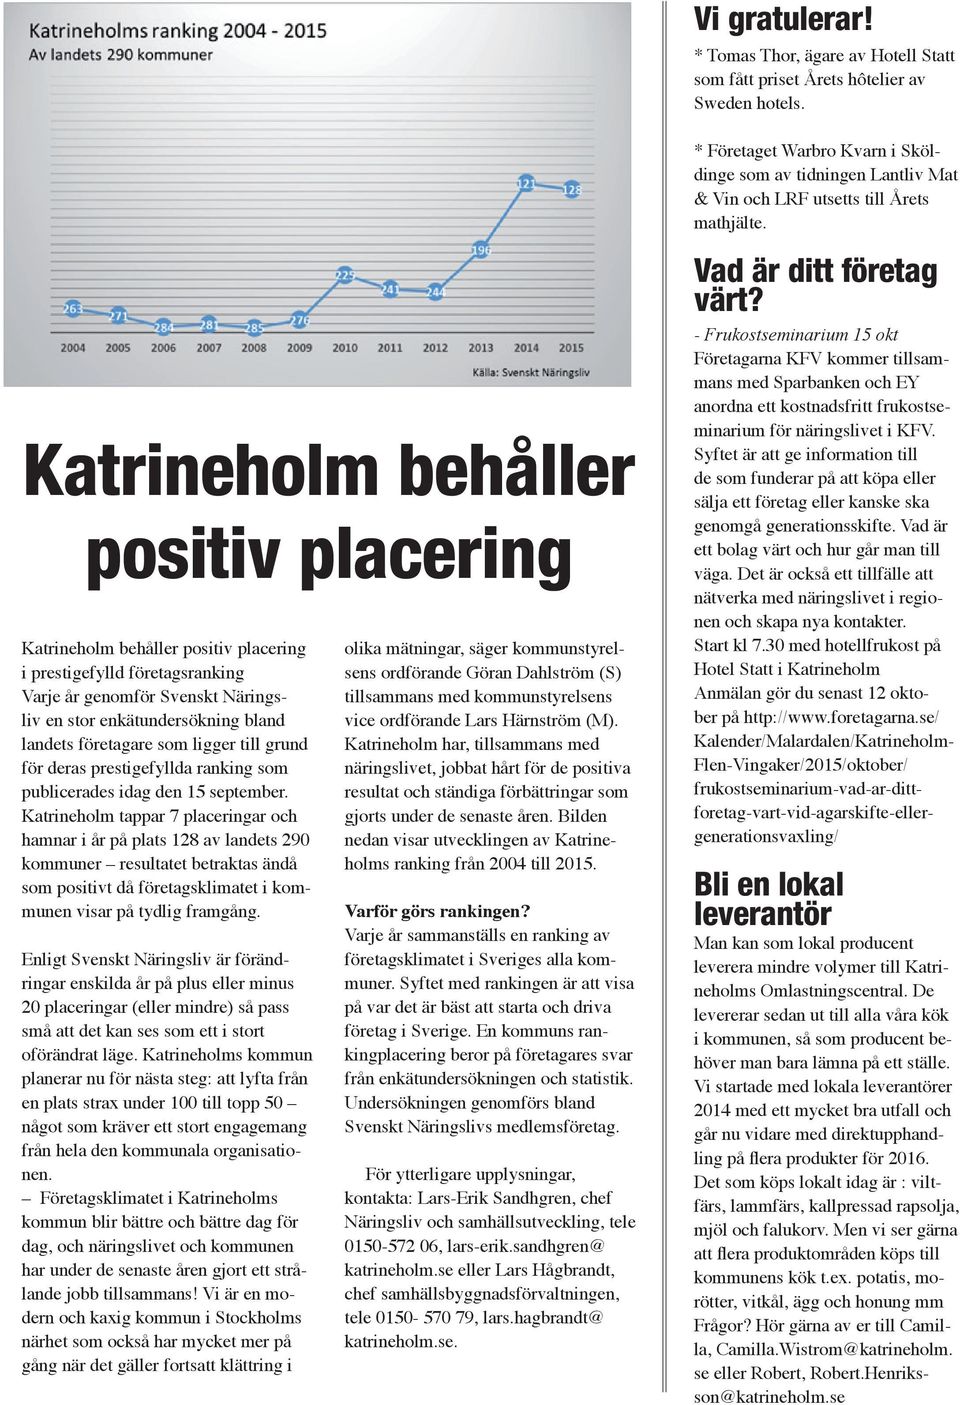 Katrineholm behåller positiv placering Katrineholm behåller positiv placering i prestigefylld företagsranking Varje år genomför Svenskt Näringsliv en stor enkätundersökning bland landets företagare